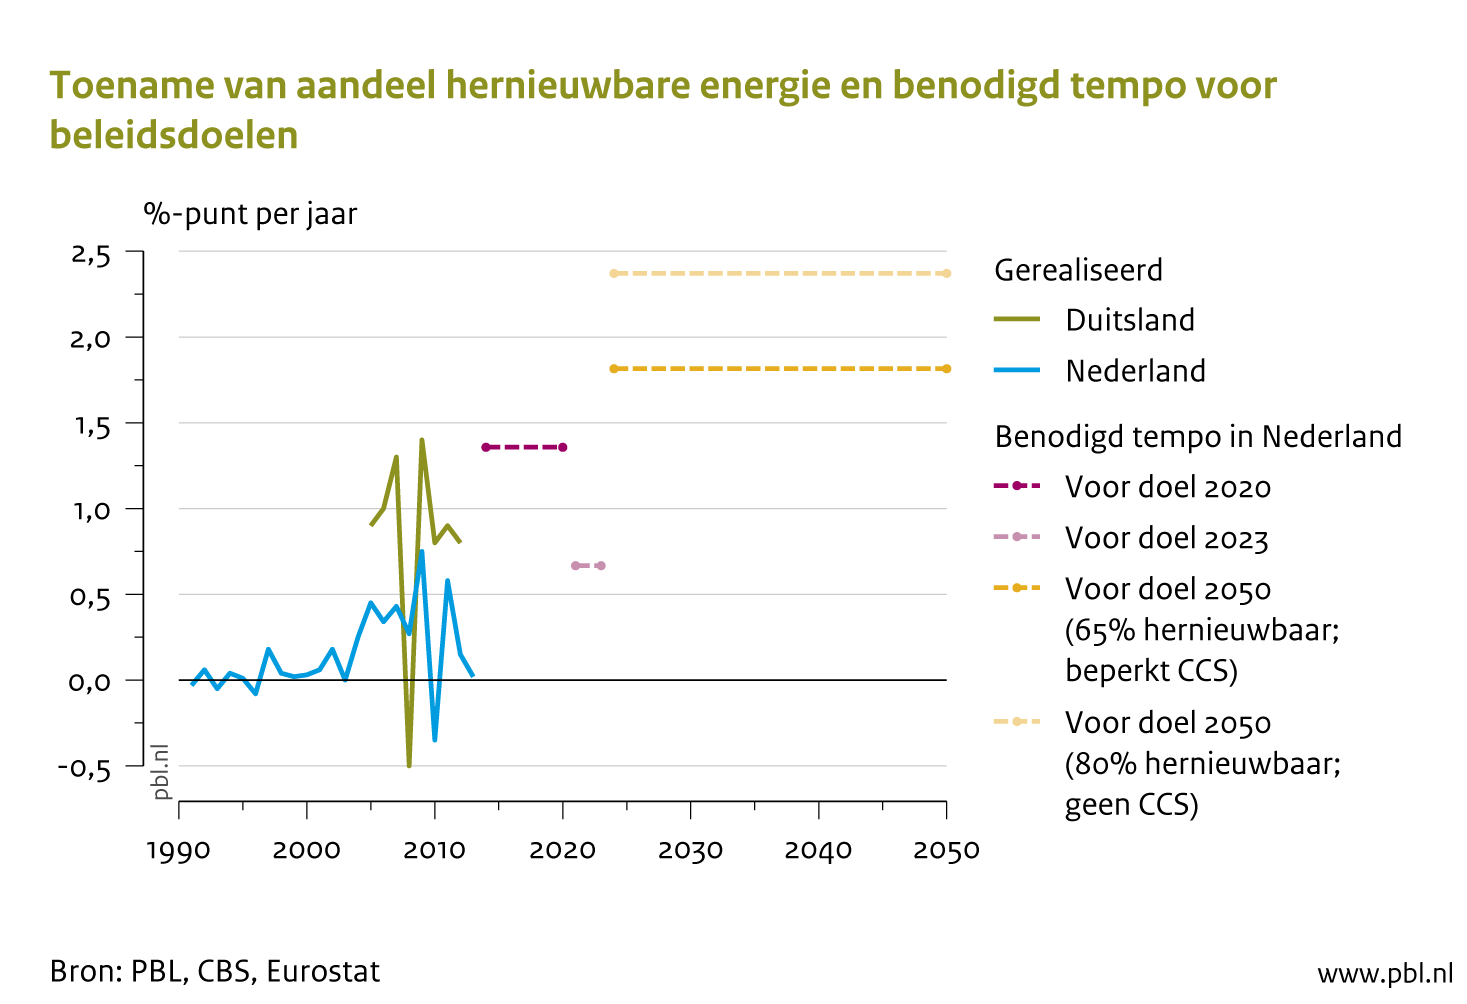 Het Nederlandse aandeel schone energie moet vanaf 2020&nbsp;toenemen met 2 procentpunt per jaar. Dat percentage wordt tot op heden bij lange na niet gehaald.